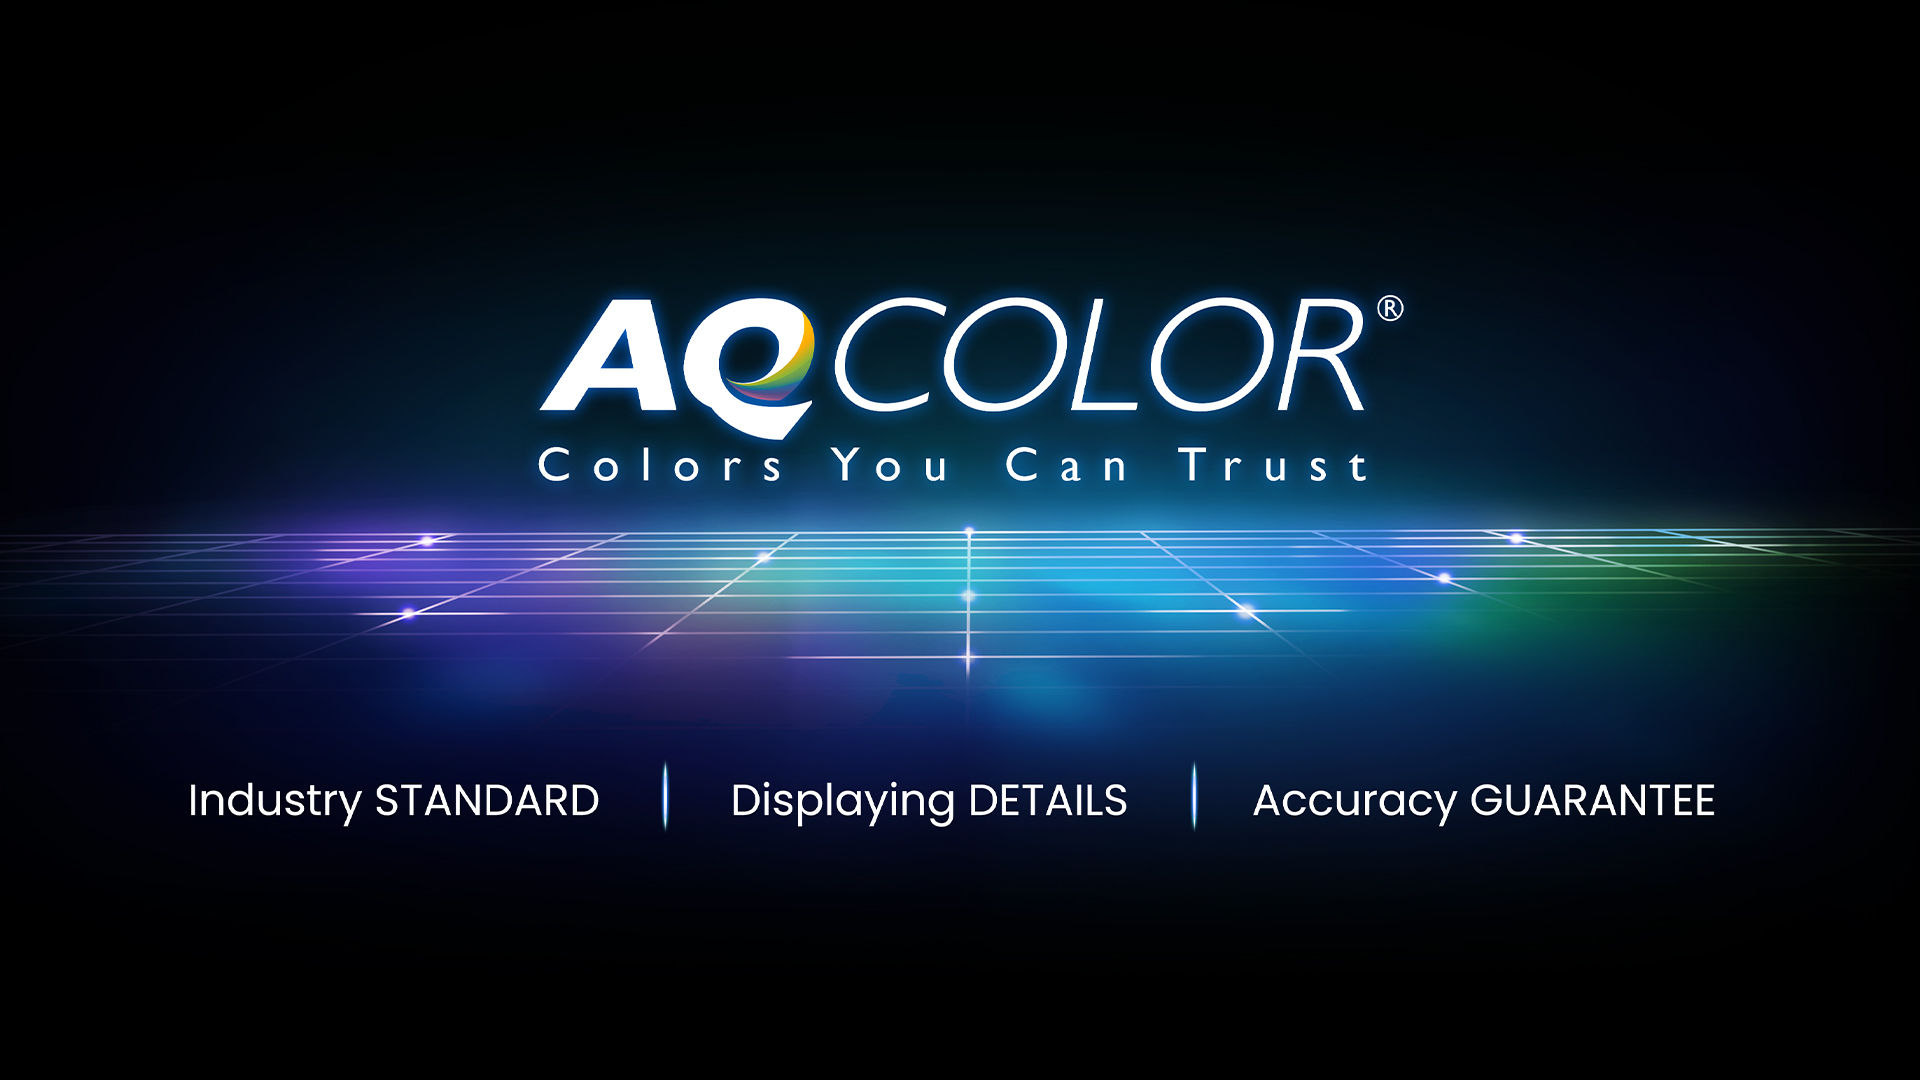 Tehnologia BenQ AQCOLOR oferă reproducere precisă. Aceasta se traduce prin afișarea culorilor exact așa cum sunt ele destinate să apară. Conduși de un expert în culori, echipa BenQ a participat la ICC și ISO pentru a stabili standarde și ghiduri de implementare legate de culoare.